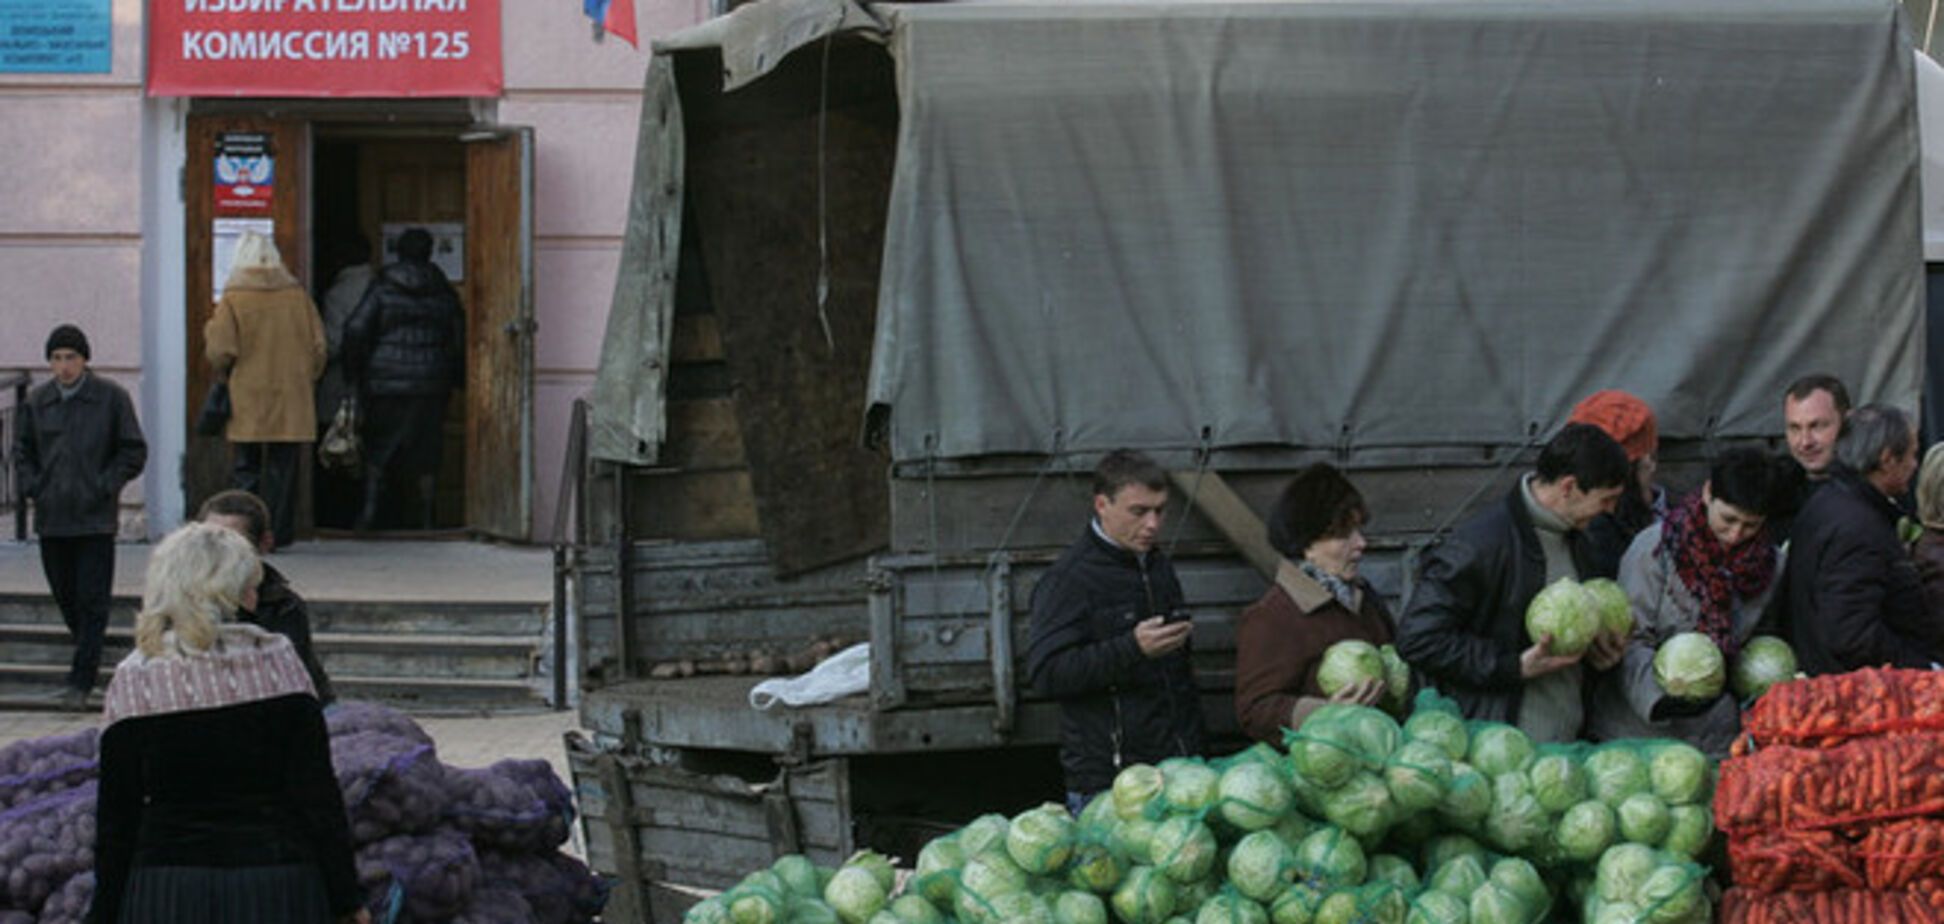 Подробиці псевдовиборів в Донецьку: картопля по гривні, 'бюлетені' з принтера і бойовики на 'ділянках'